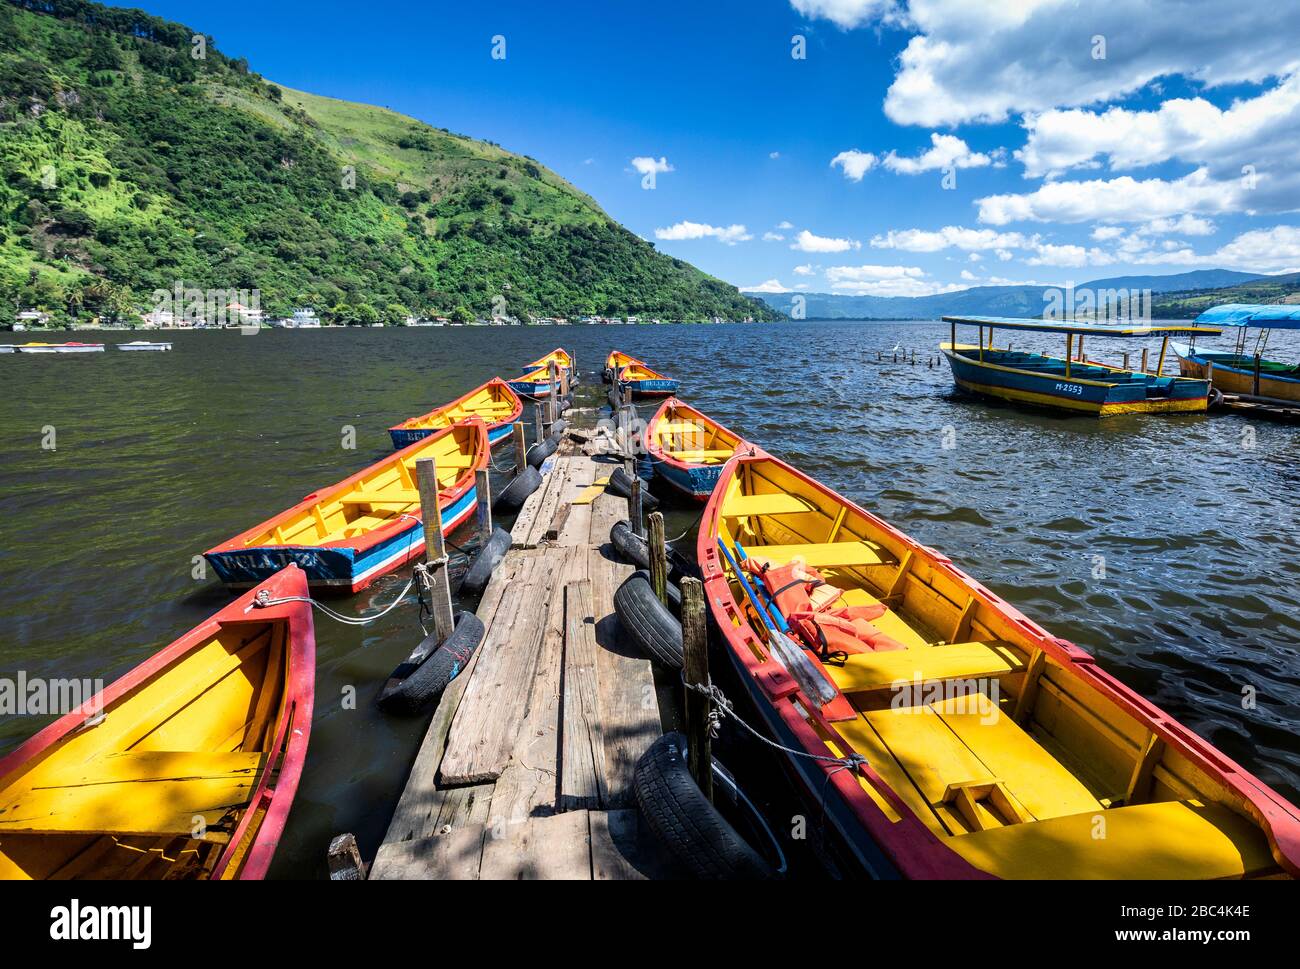 Boats line a dock on Lake Amatitlan, Guatemala. Stock Photo